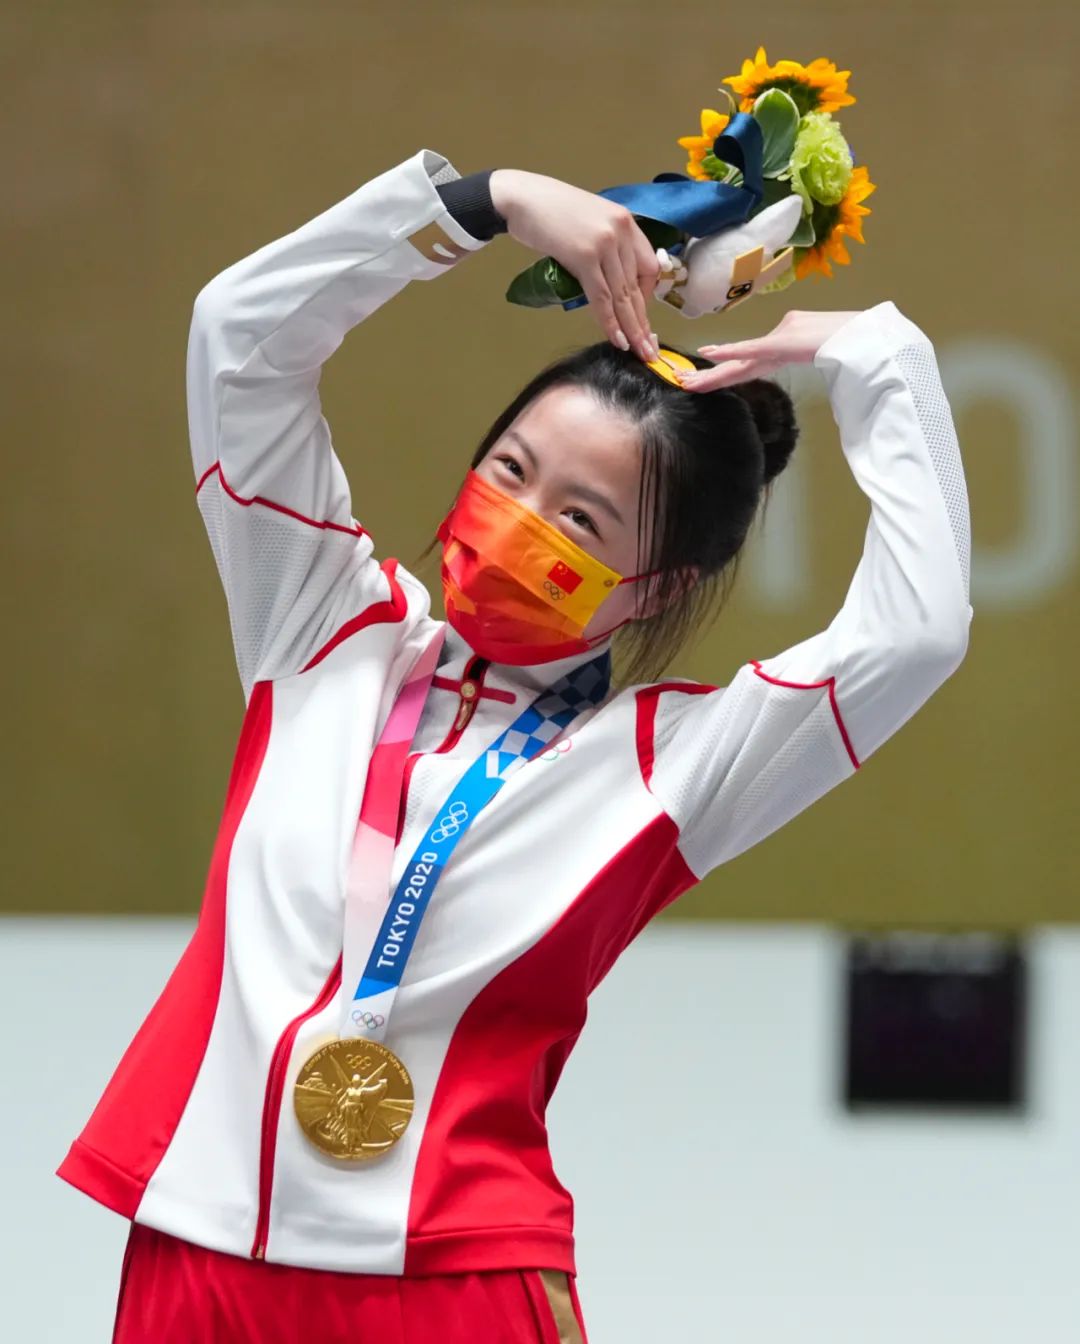 东京奥运会冠军花束 桔梗代表爱和勇气 野兽派老板娘 微信公众号文章 微小领